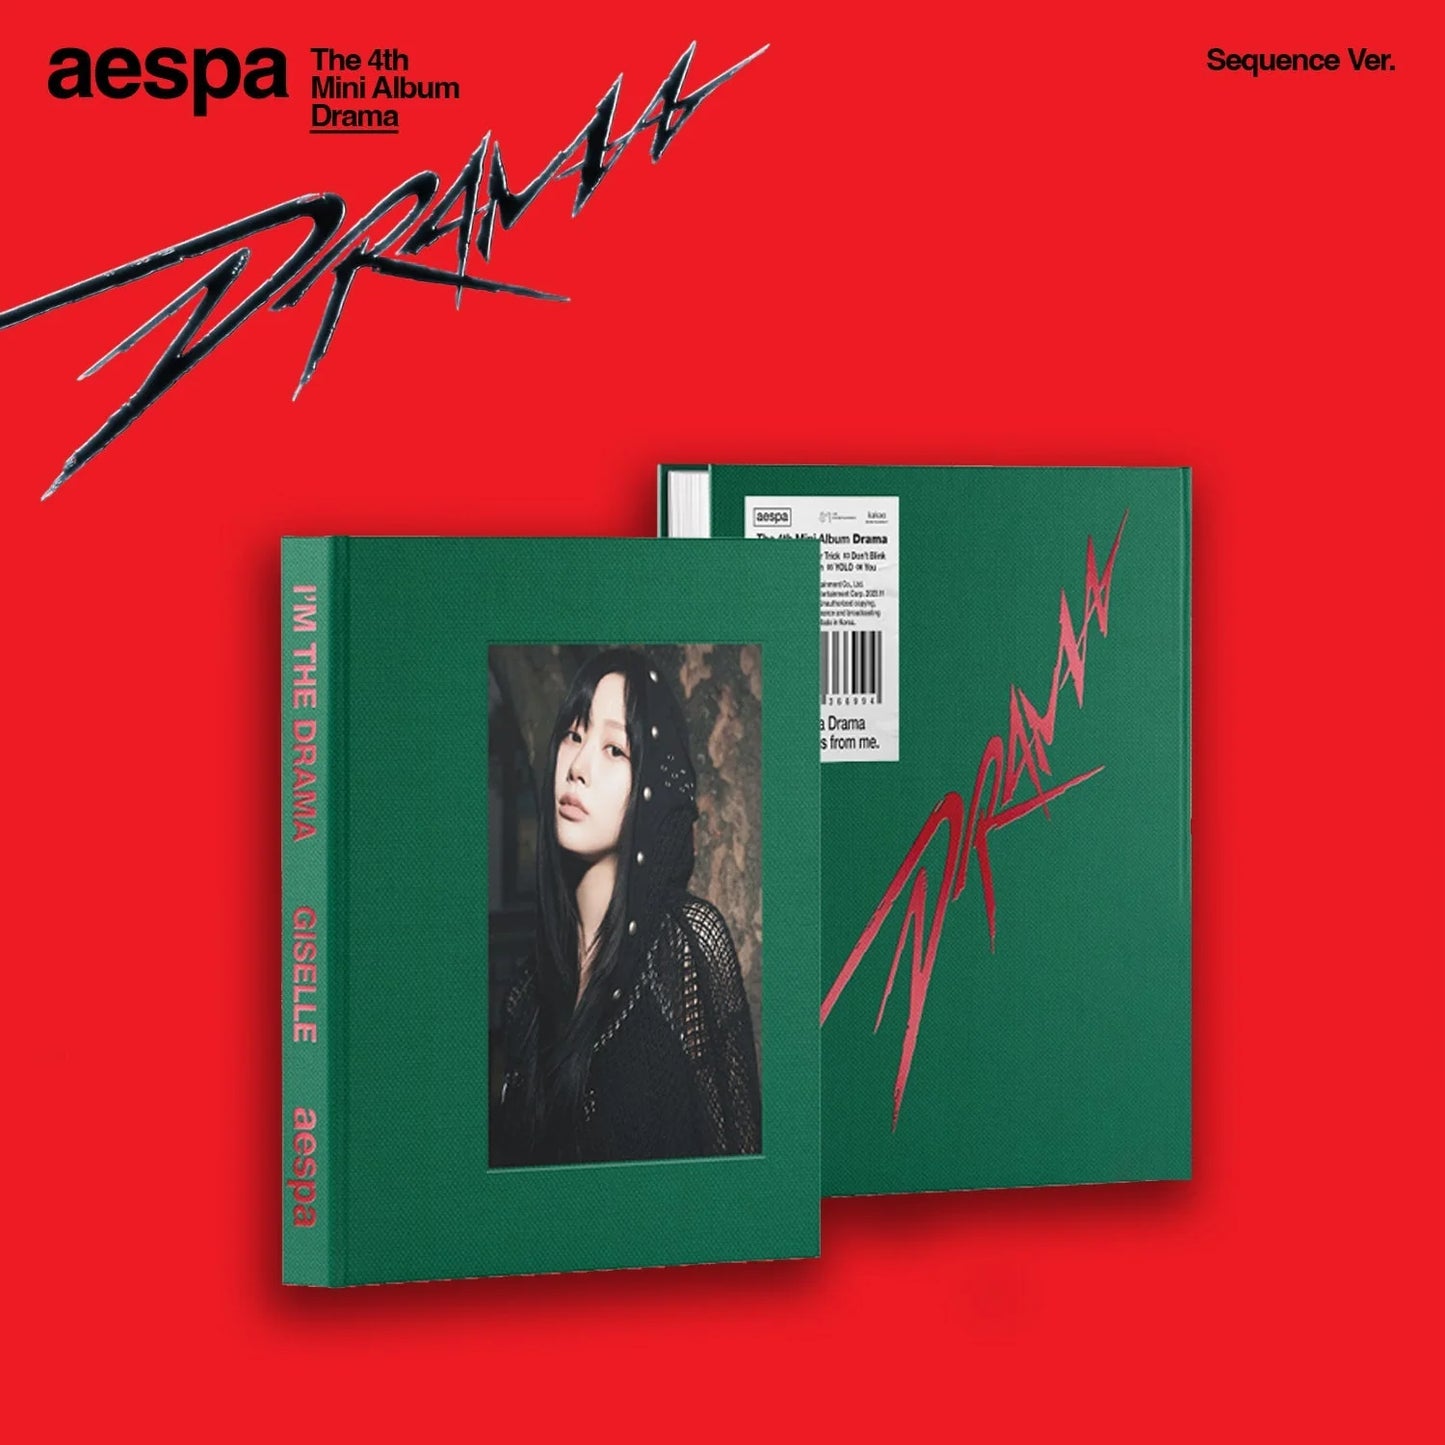 Aespa 4th Mini Album: Drama (Sequence Version)